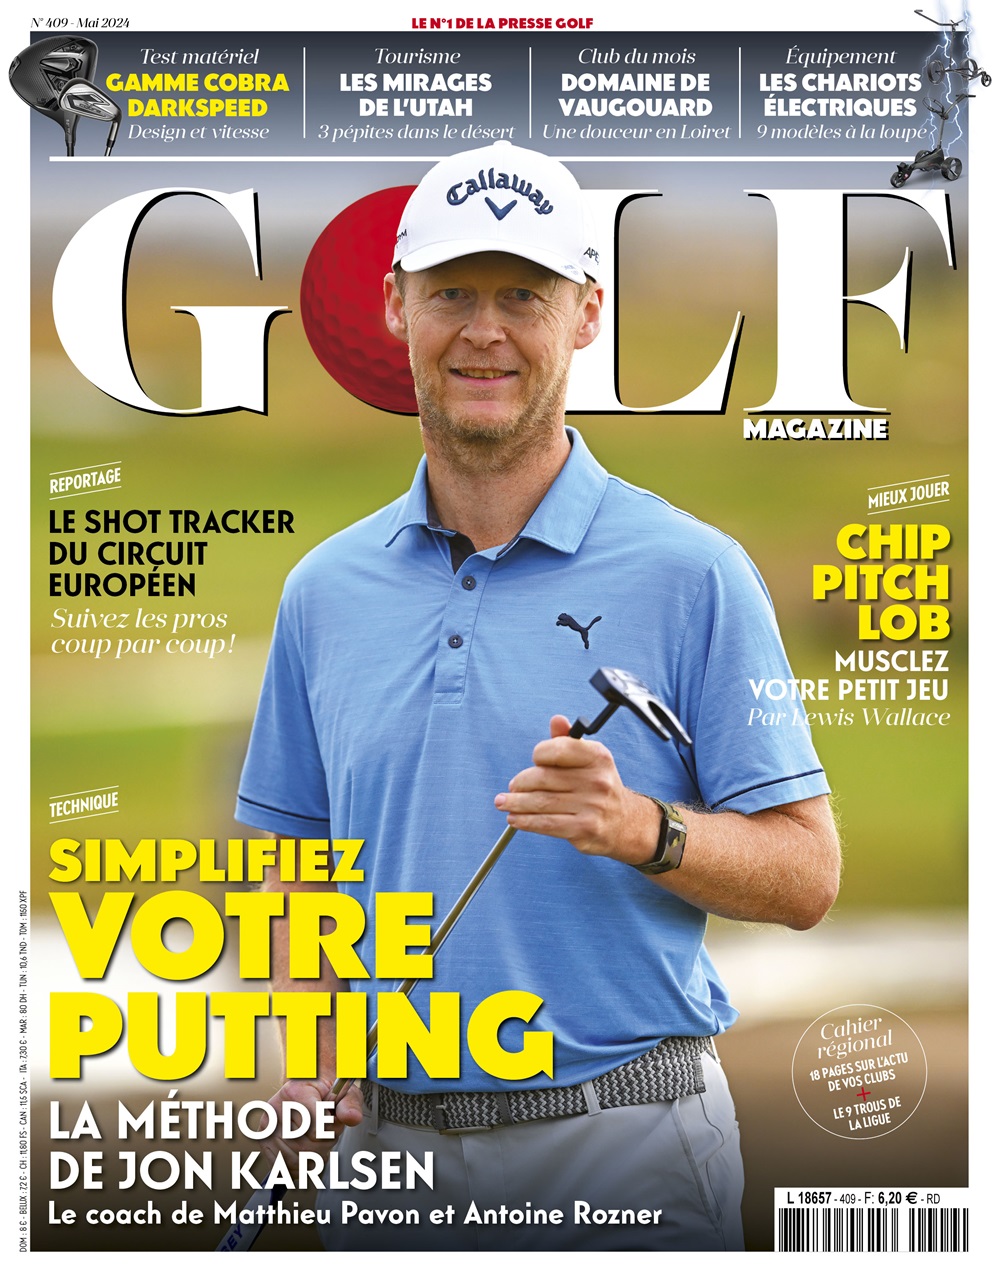 Golf Magazine n°409 : simplifiez votre putting